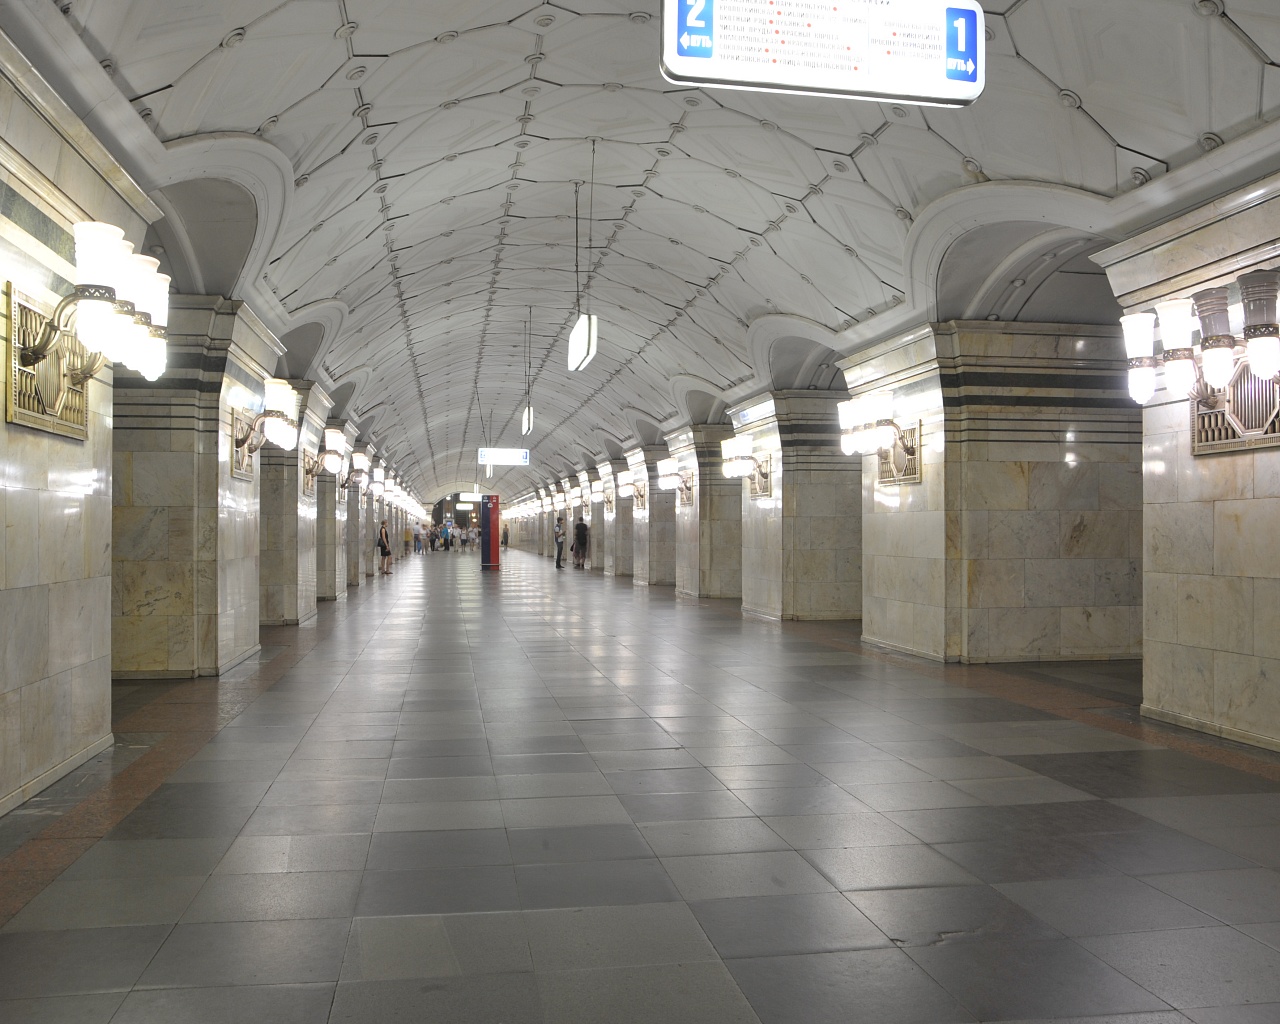 Южный вестибюль станции метро "Спортивная" открылся после реконструкции